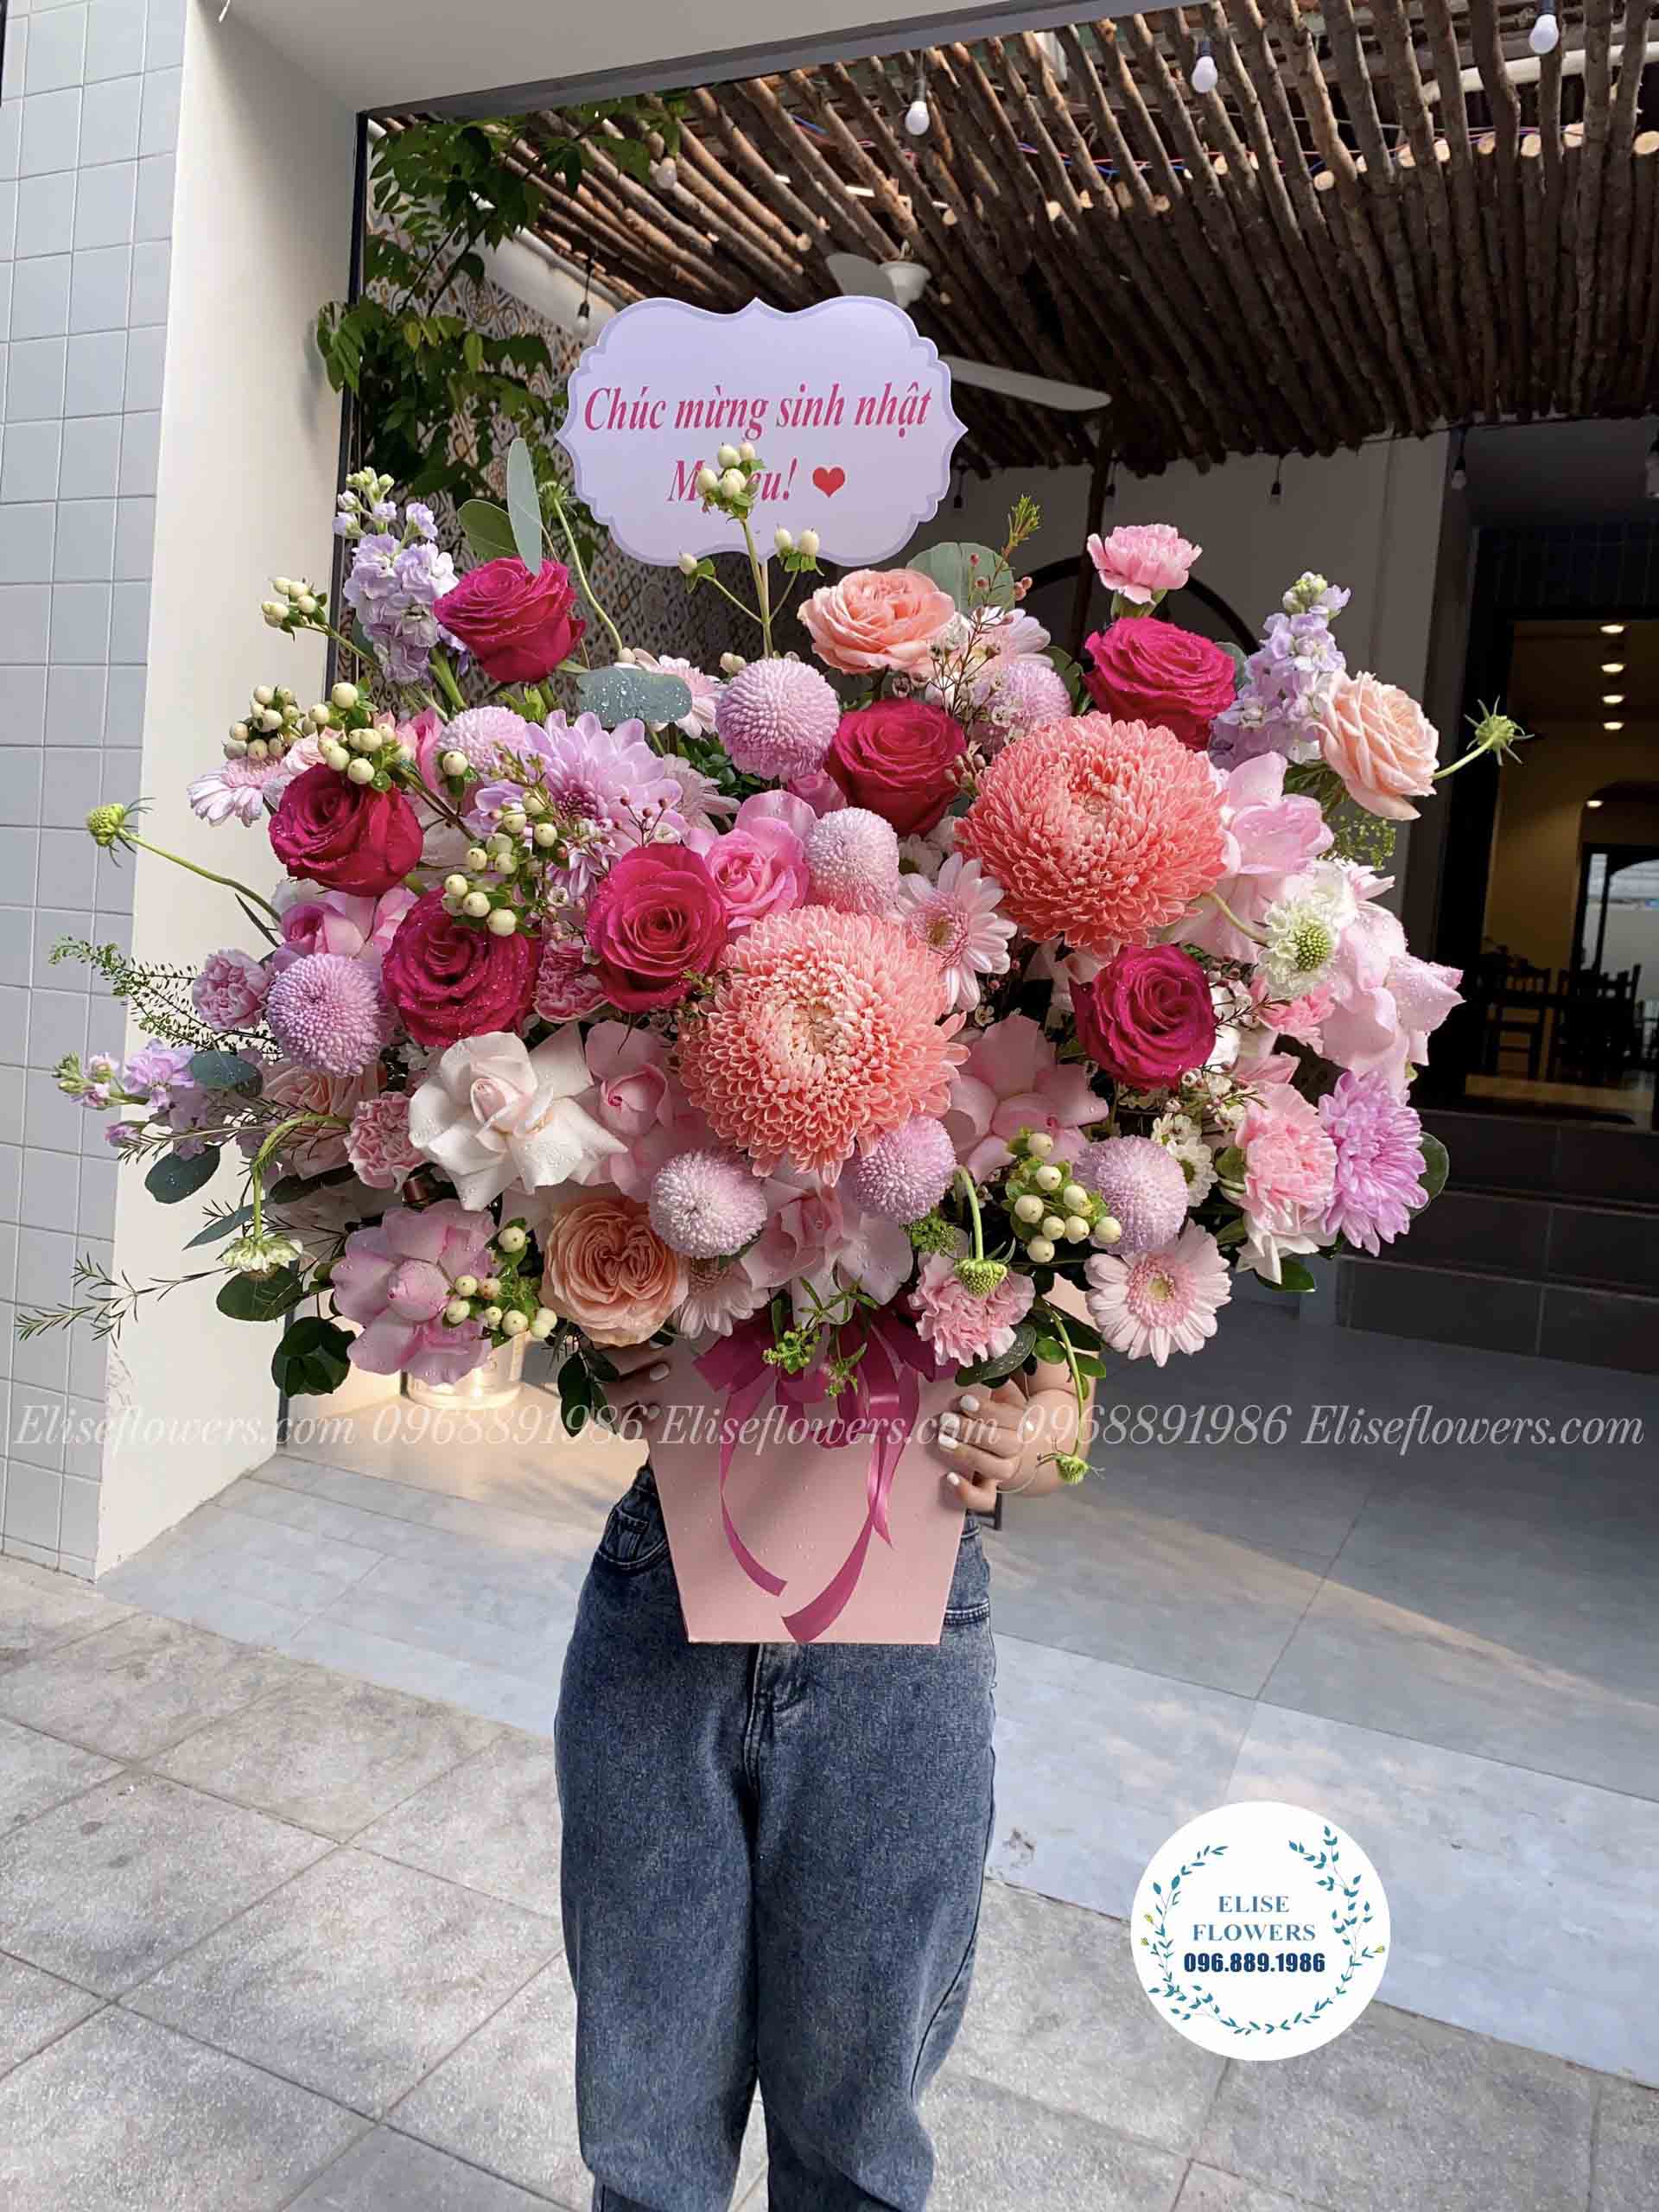 Lẵng hoa nhập khẩu màu hồng tặng sinh nhật mẹ ở Cầu Giấy Hà Nội - Eliseflowers.com